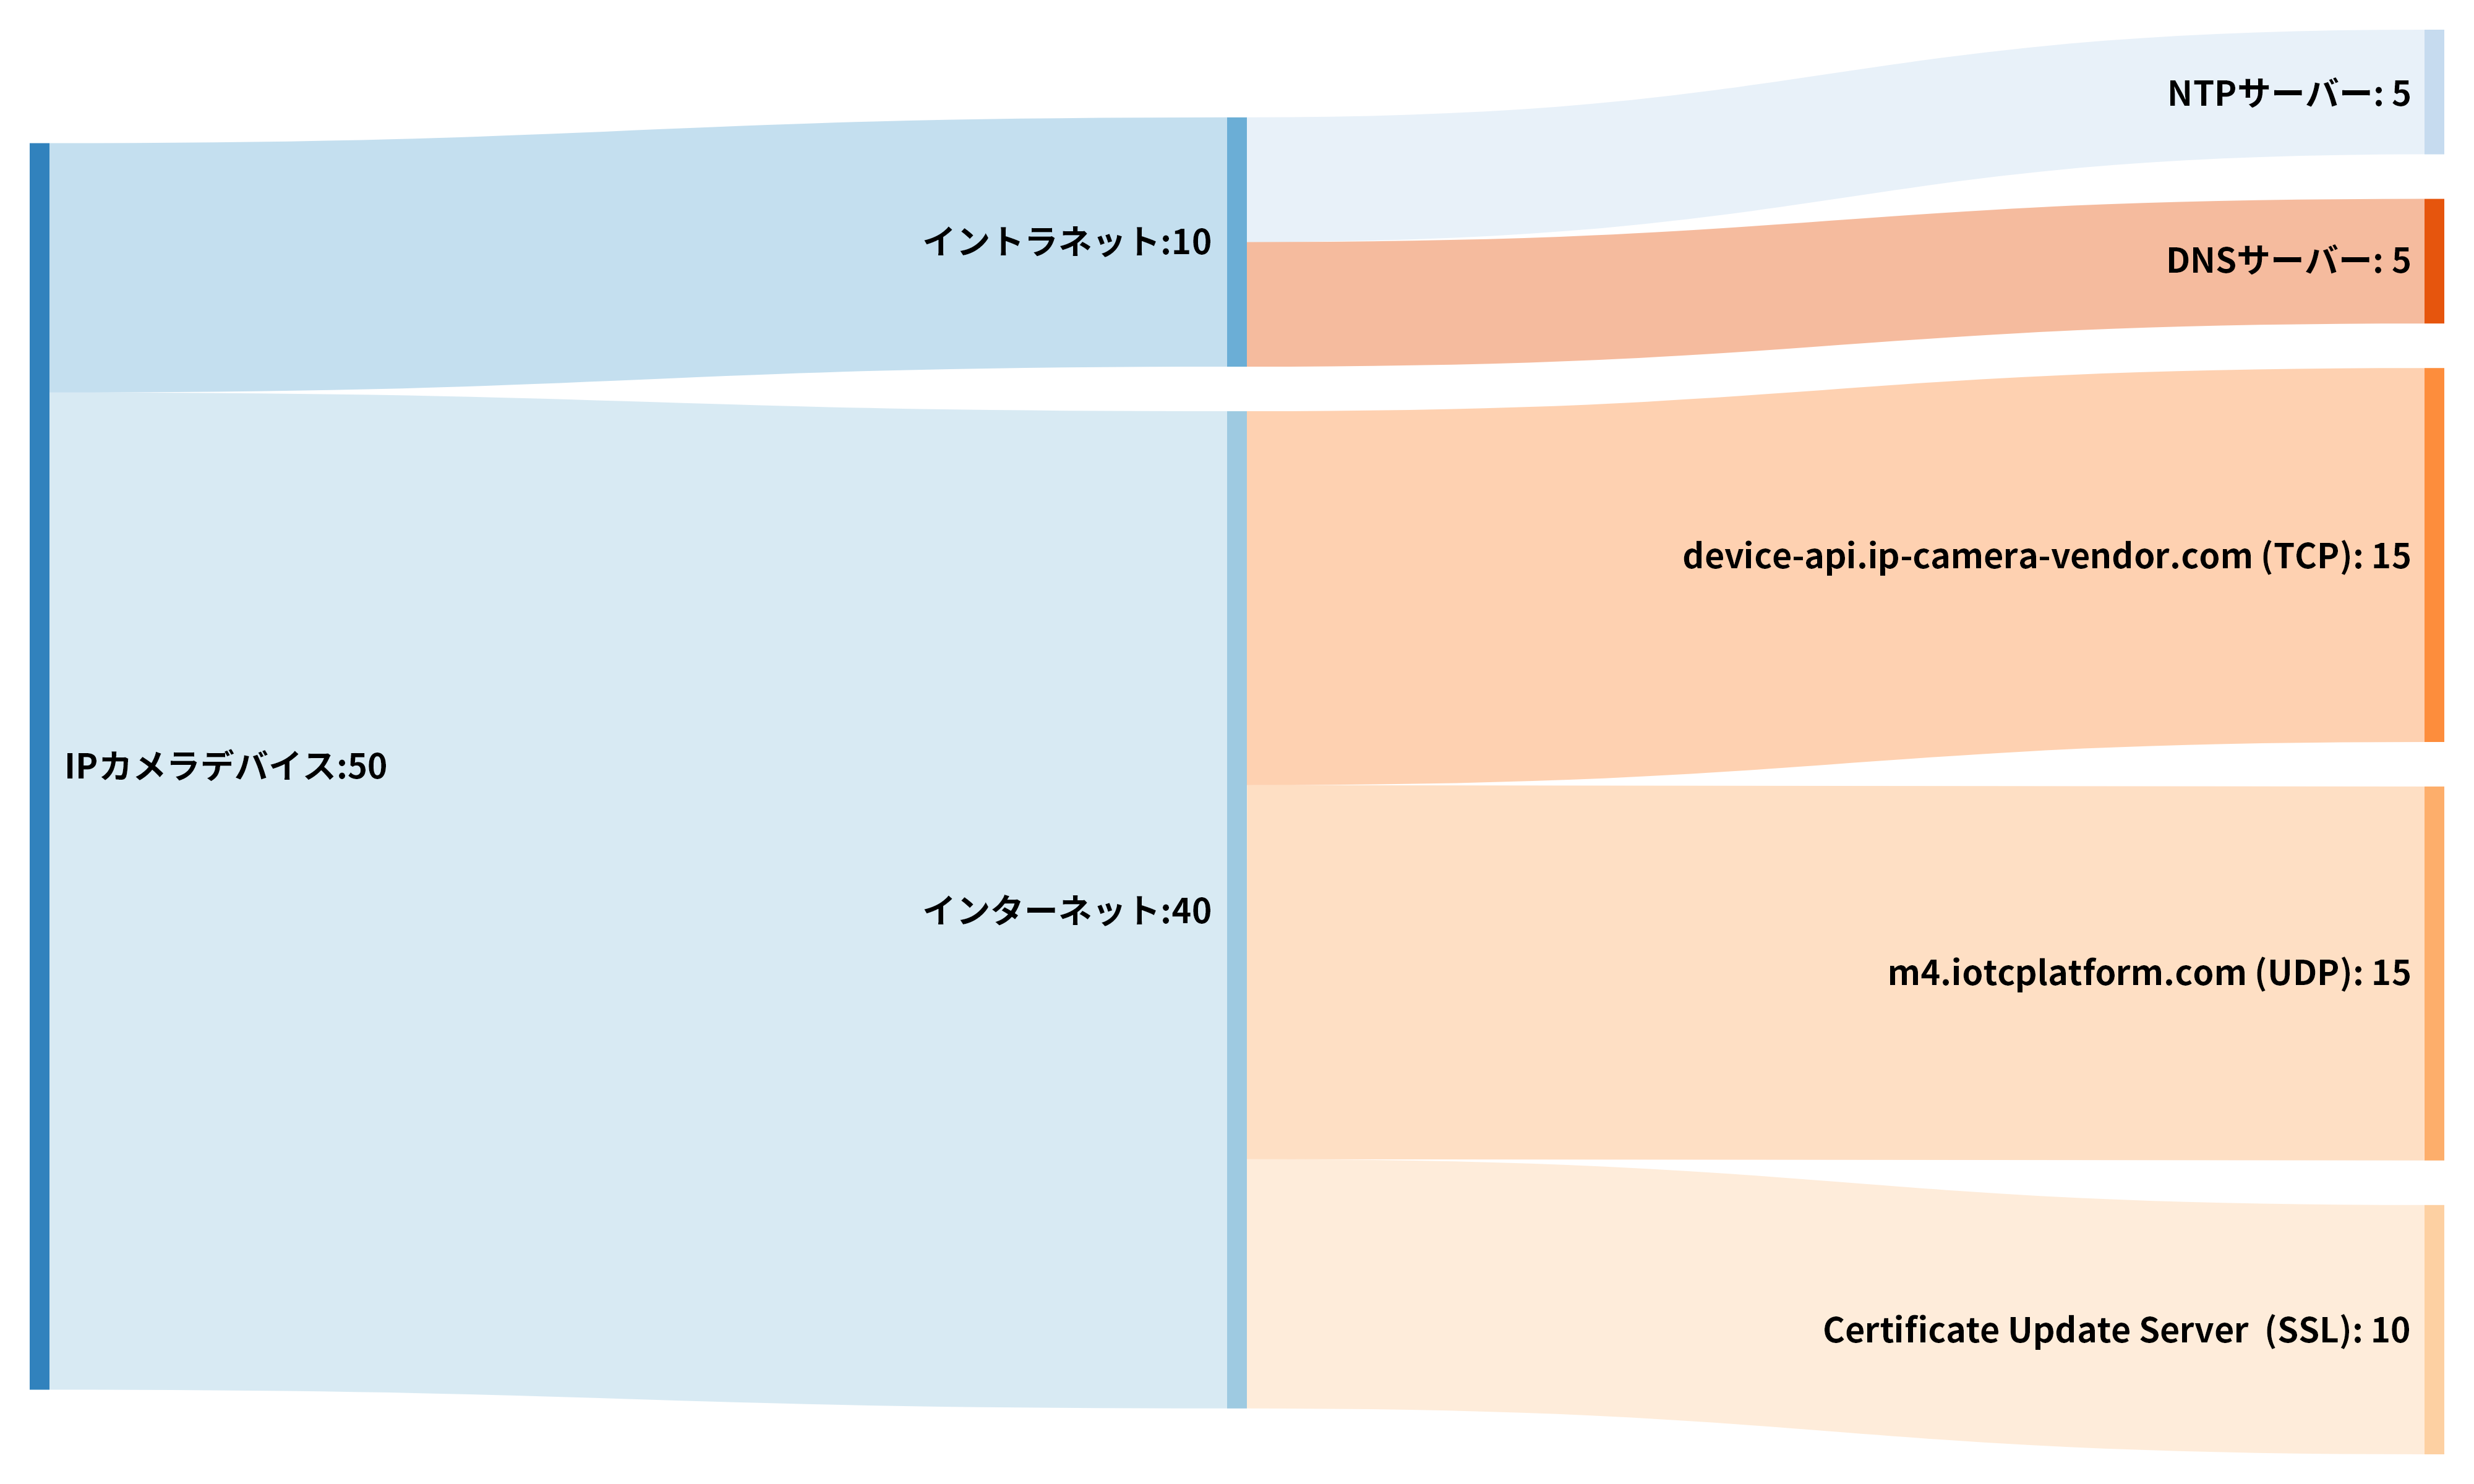 この図はある1台のネットワークカメラによるネットワーク接続数の典型例を示したものです。左側の青色はネットワークカメラデバイス: 50、インターネット: 40、イントラネット: 10と表示しています。右側には薄い青とオレンジでNTP サーバー: 5、DNS サーバー: 5、device-api.ip-camera-vendor[.]com(TCP): 15、m4.iotcplatform[.]com(UDP): 15、Certificate Update Server (SSL): 10と表示しています。